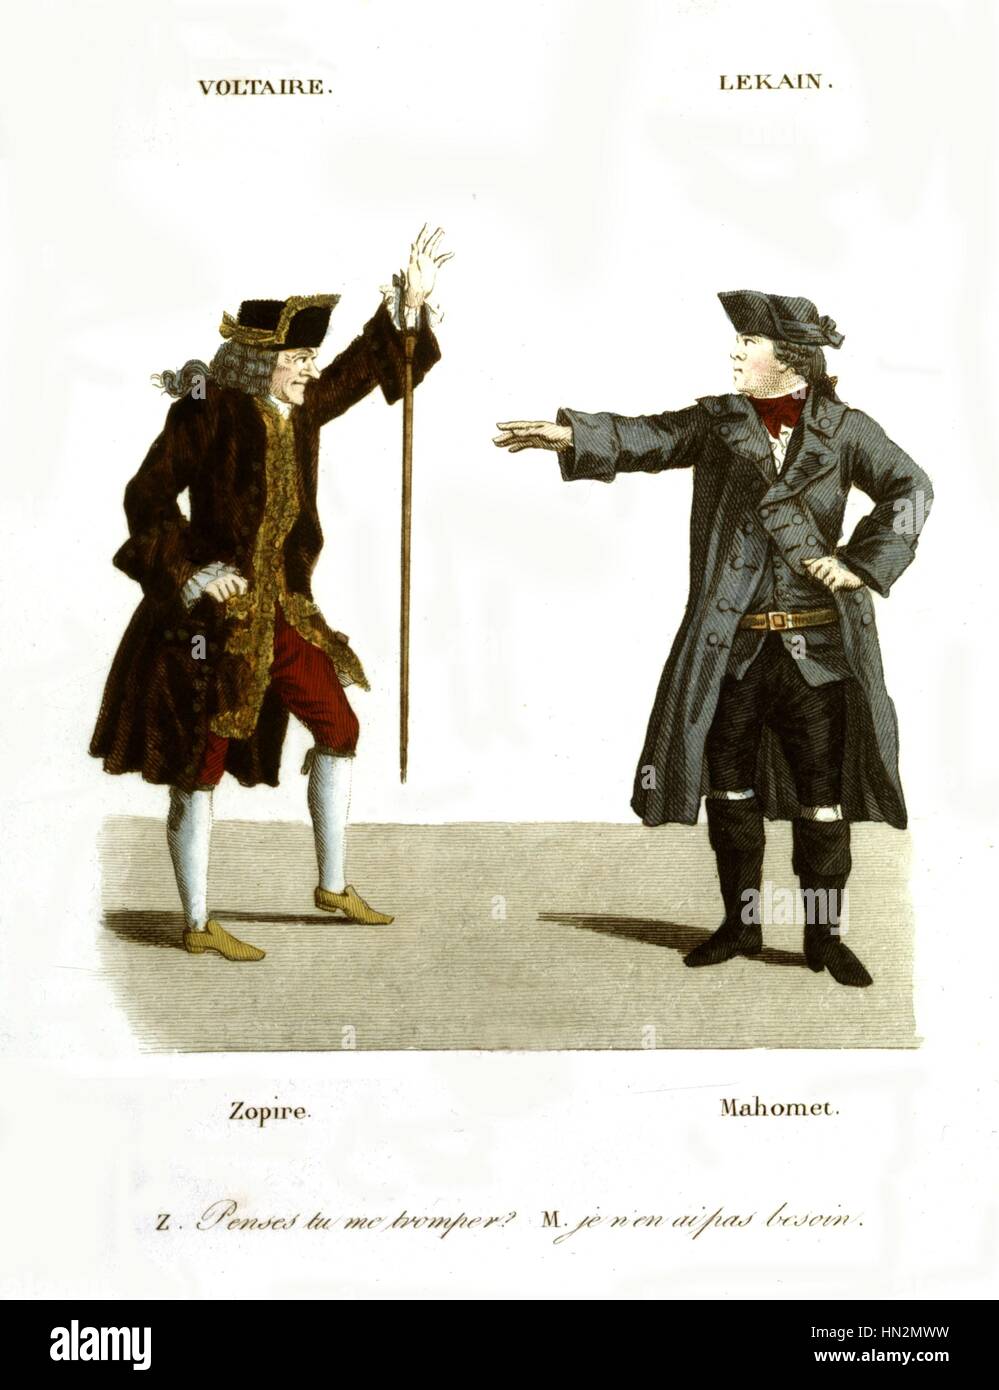 Grabado pintado después Foesch y Whirsker. Voltaire jugando parte de Lekain Zopir, y tocar la parte de Muhammad 1820 Francia Paris. Bibliotheque Nationale Foto de stock